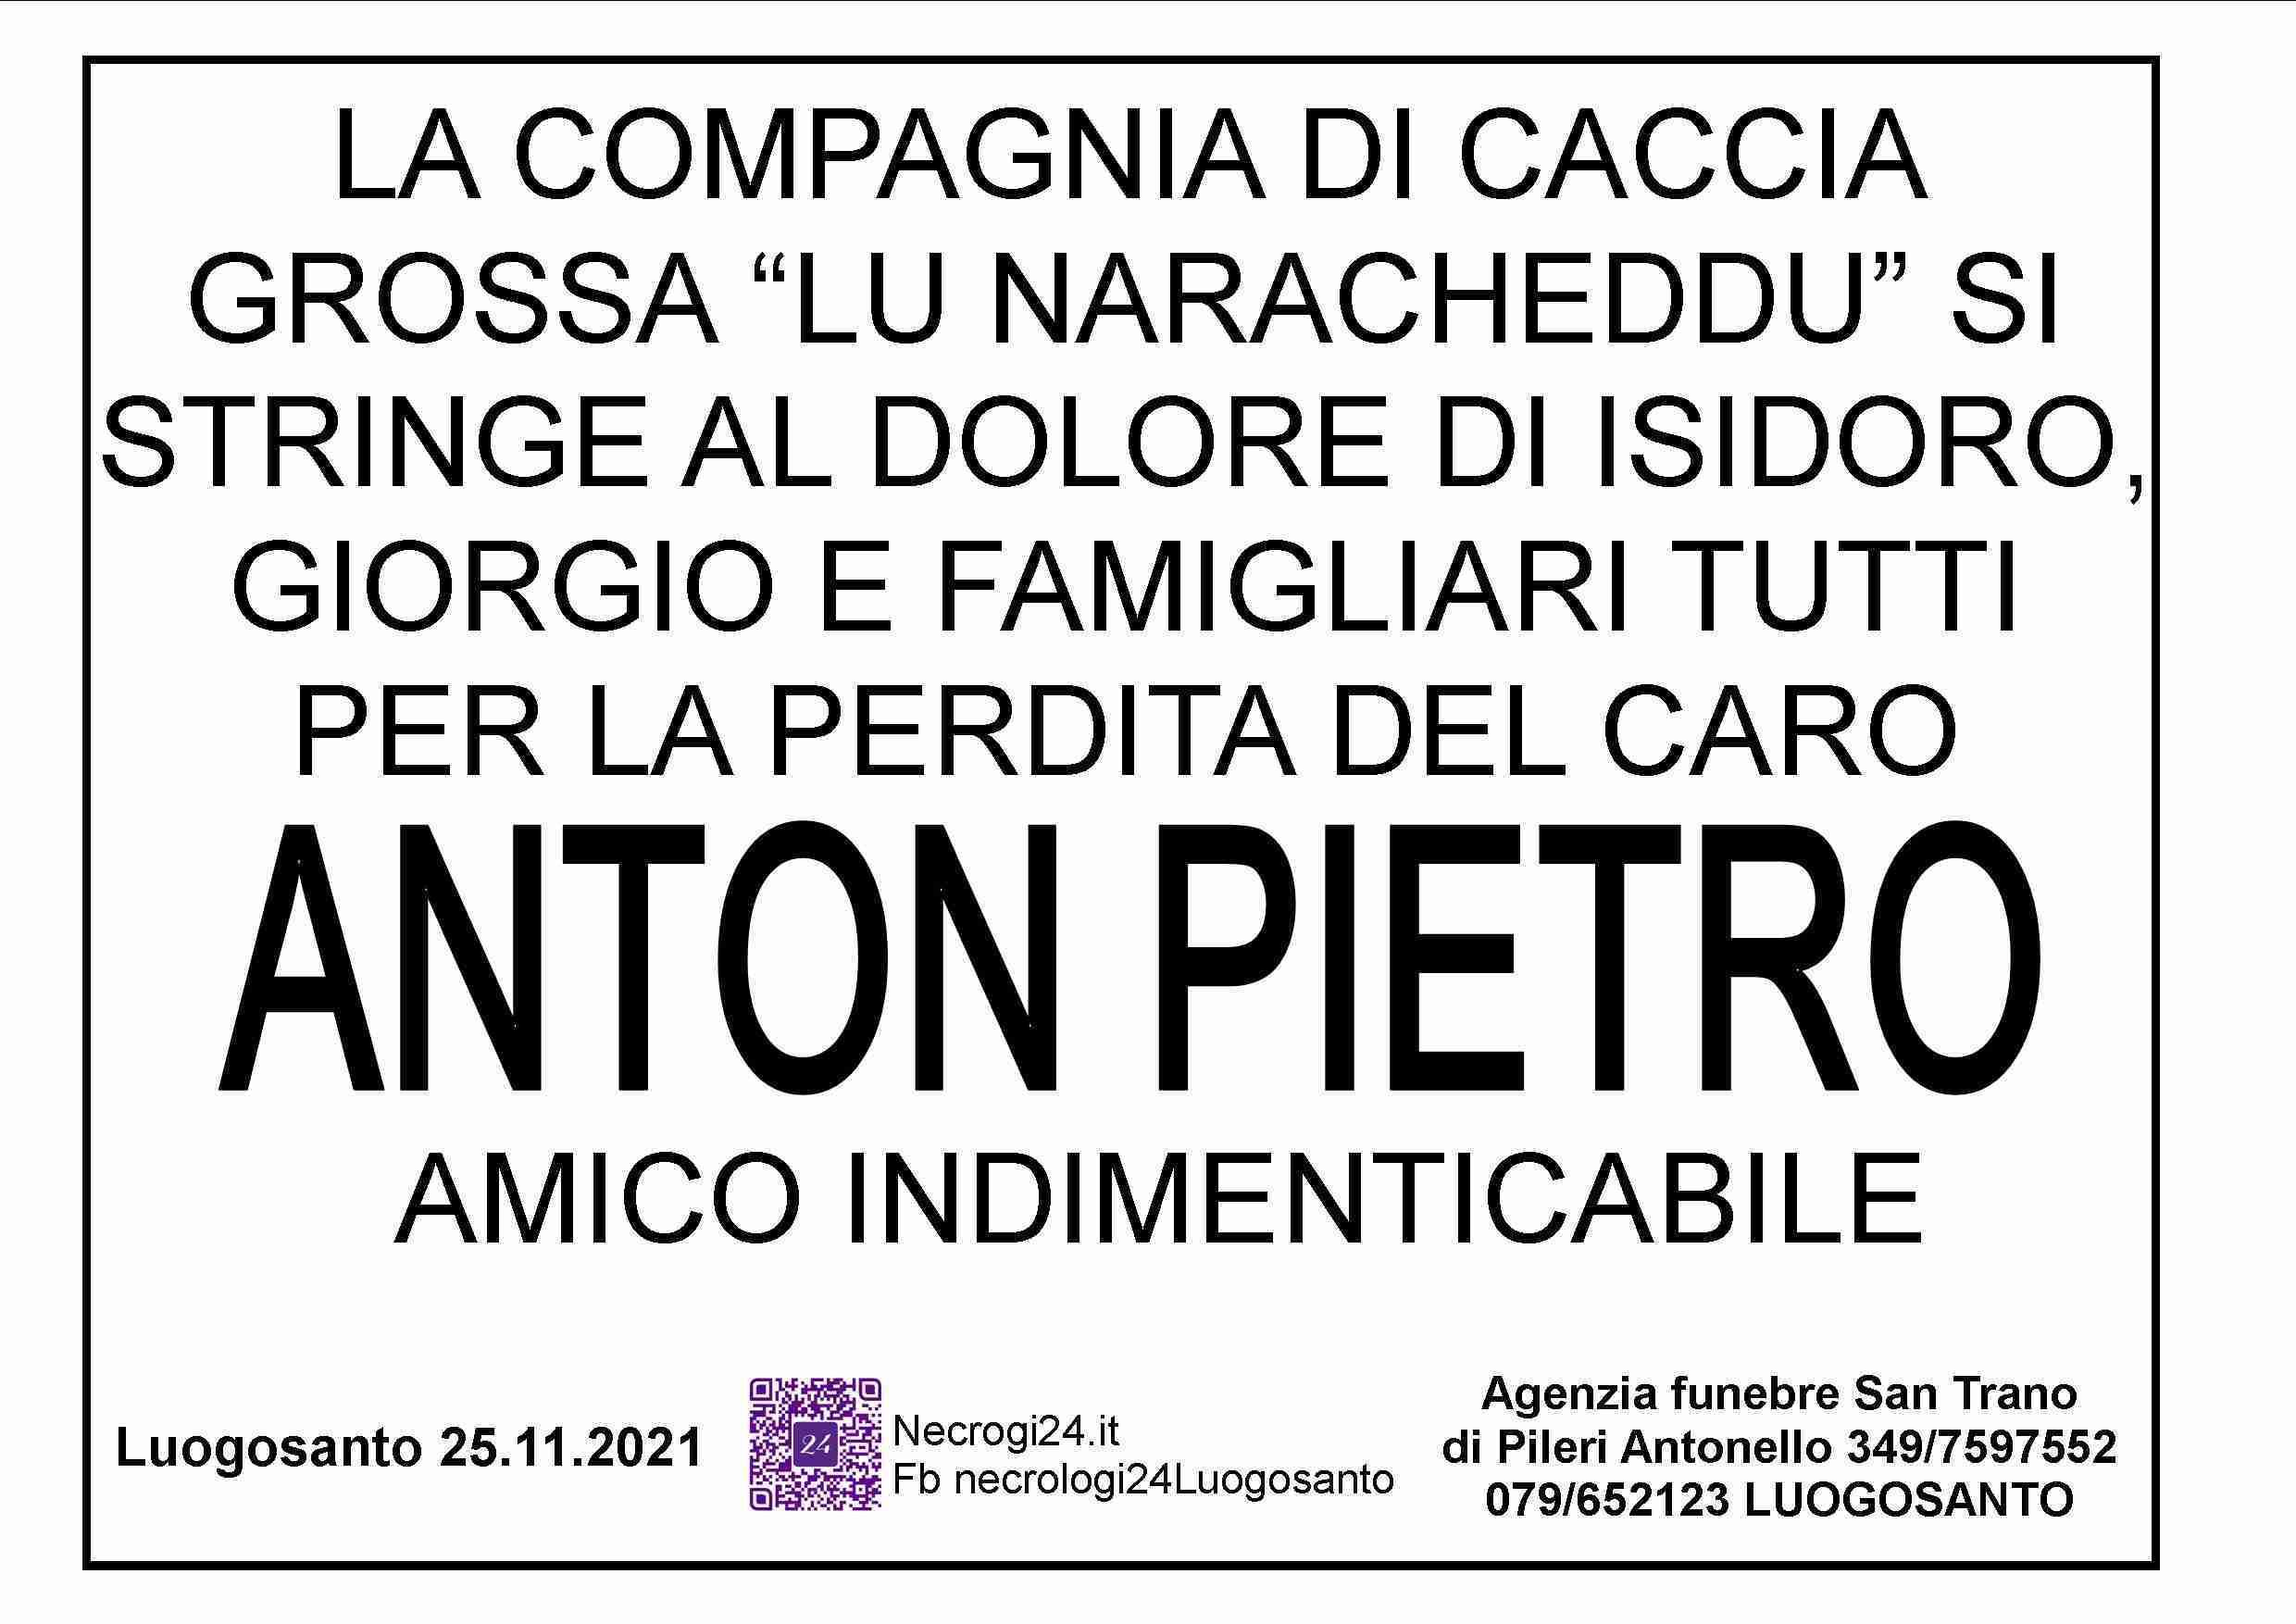 Salvatore Antonio Pietro Mamia